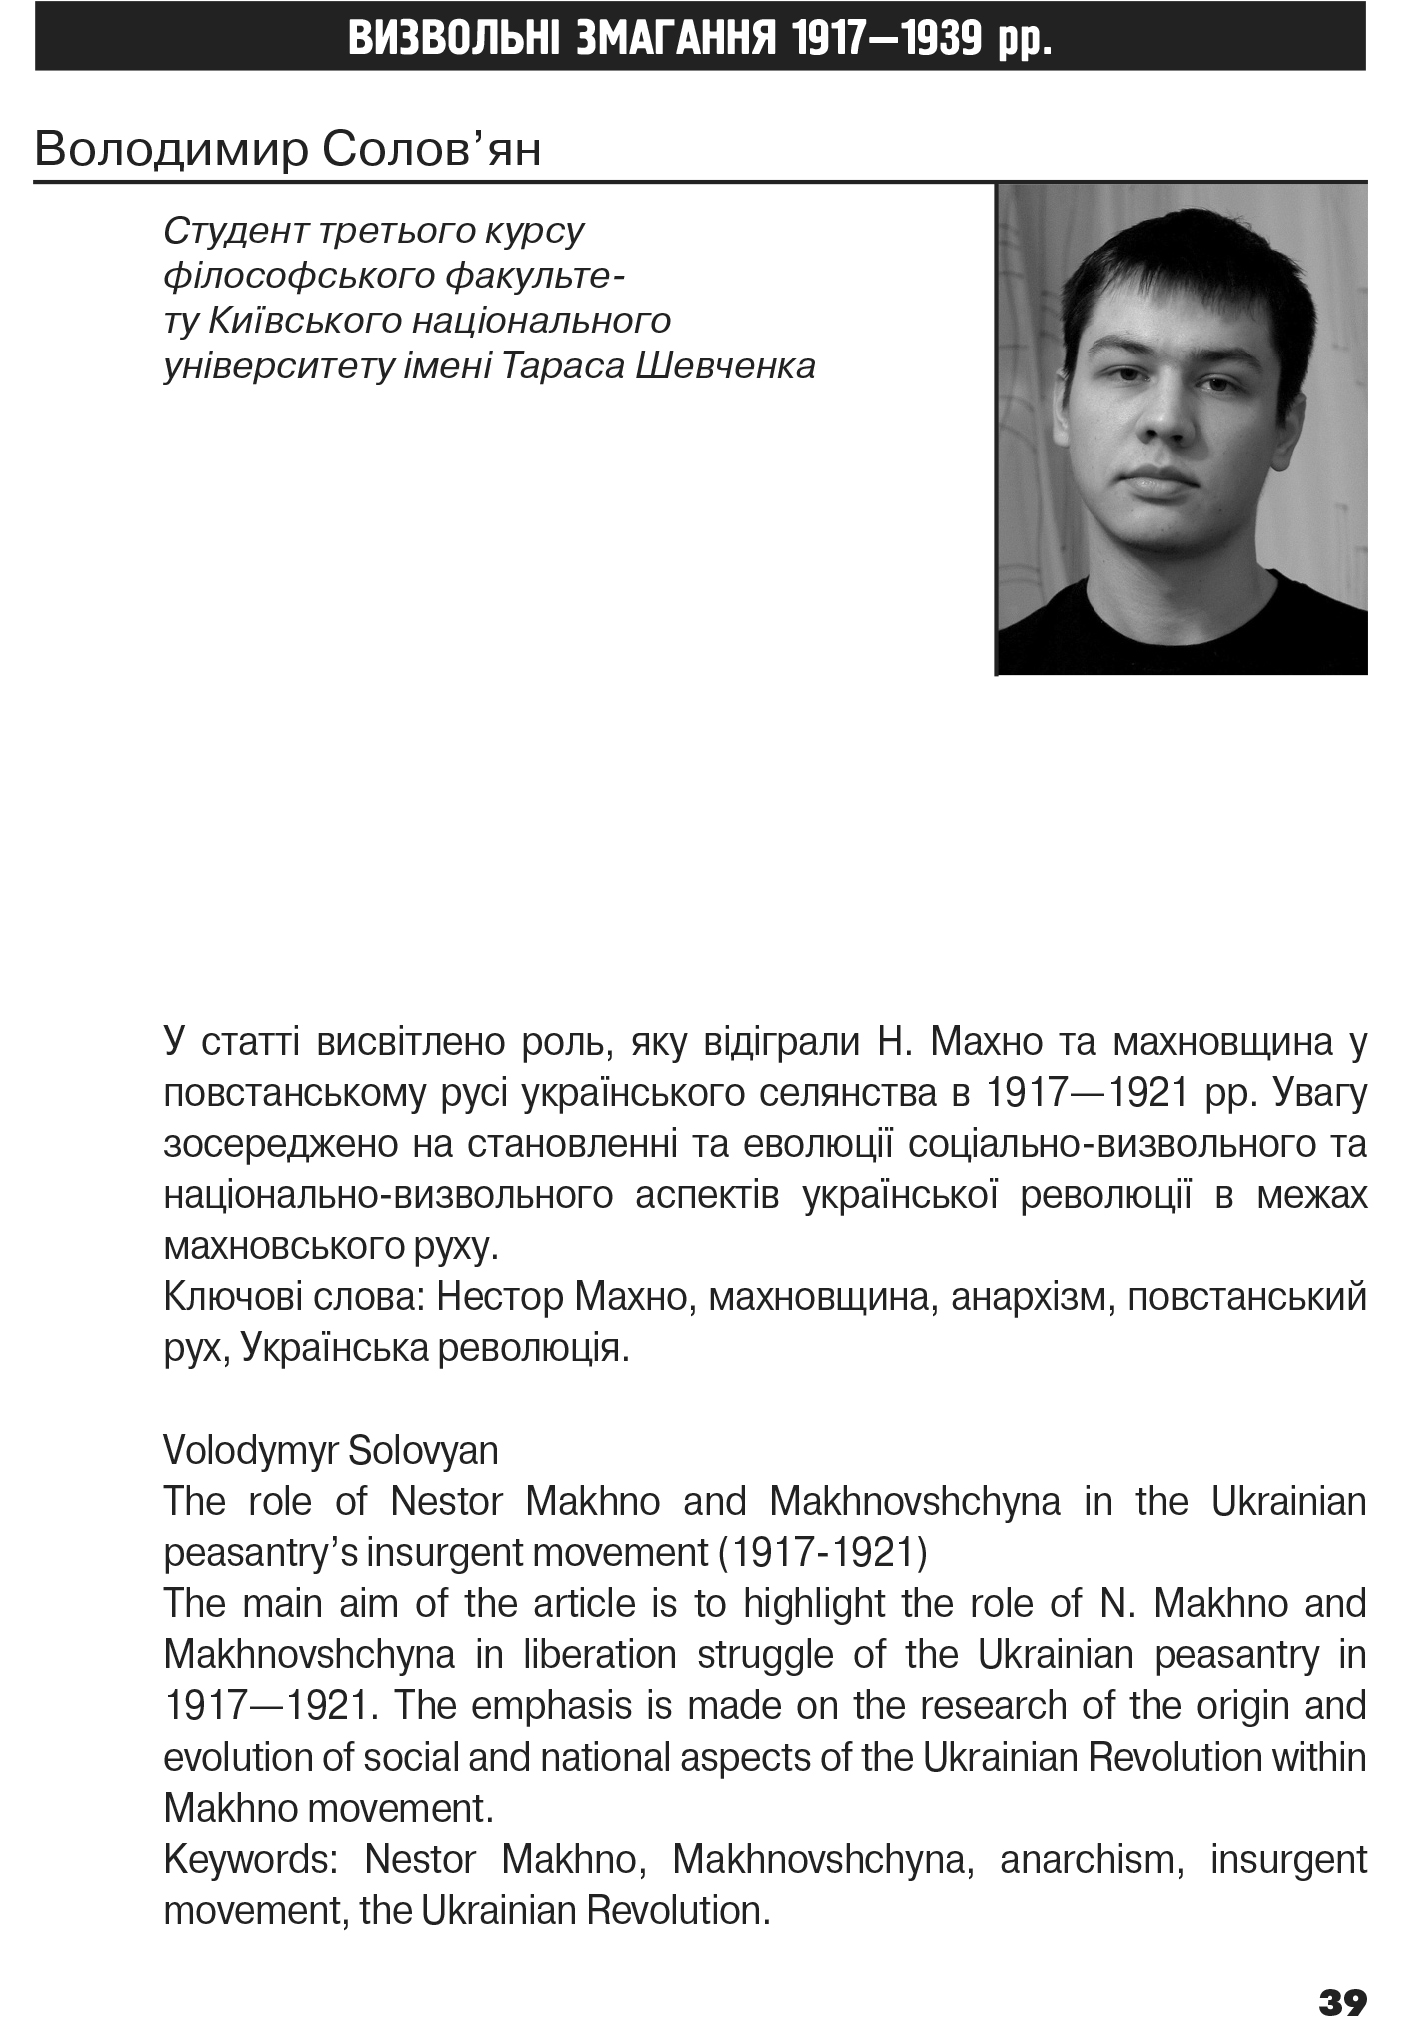 Український визвольний рух №18, ст. 39 - 58